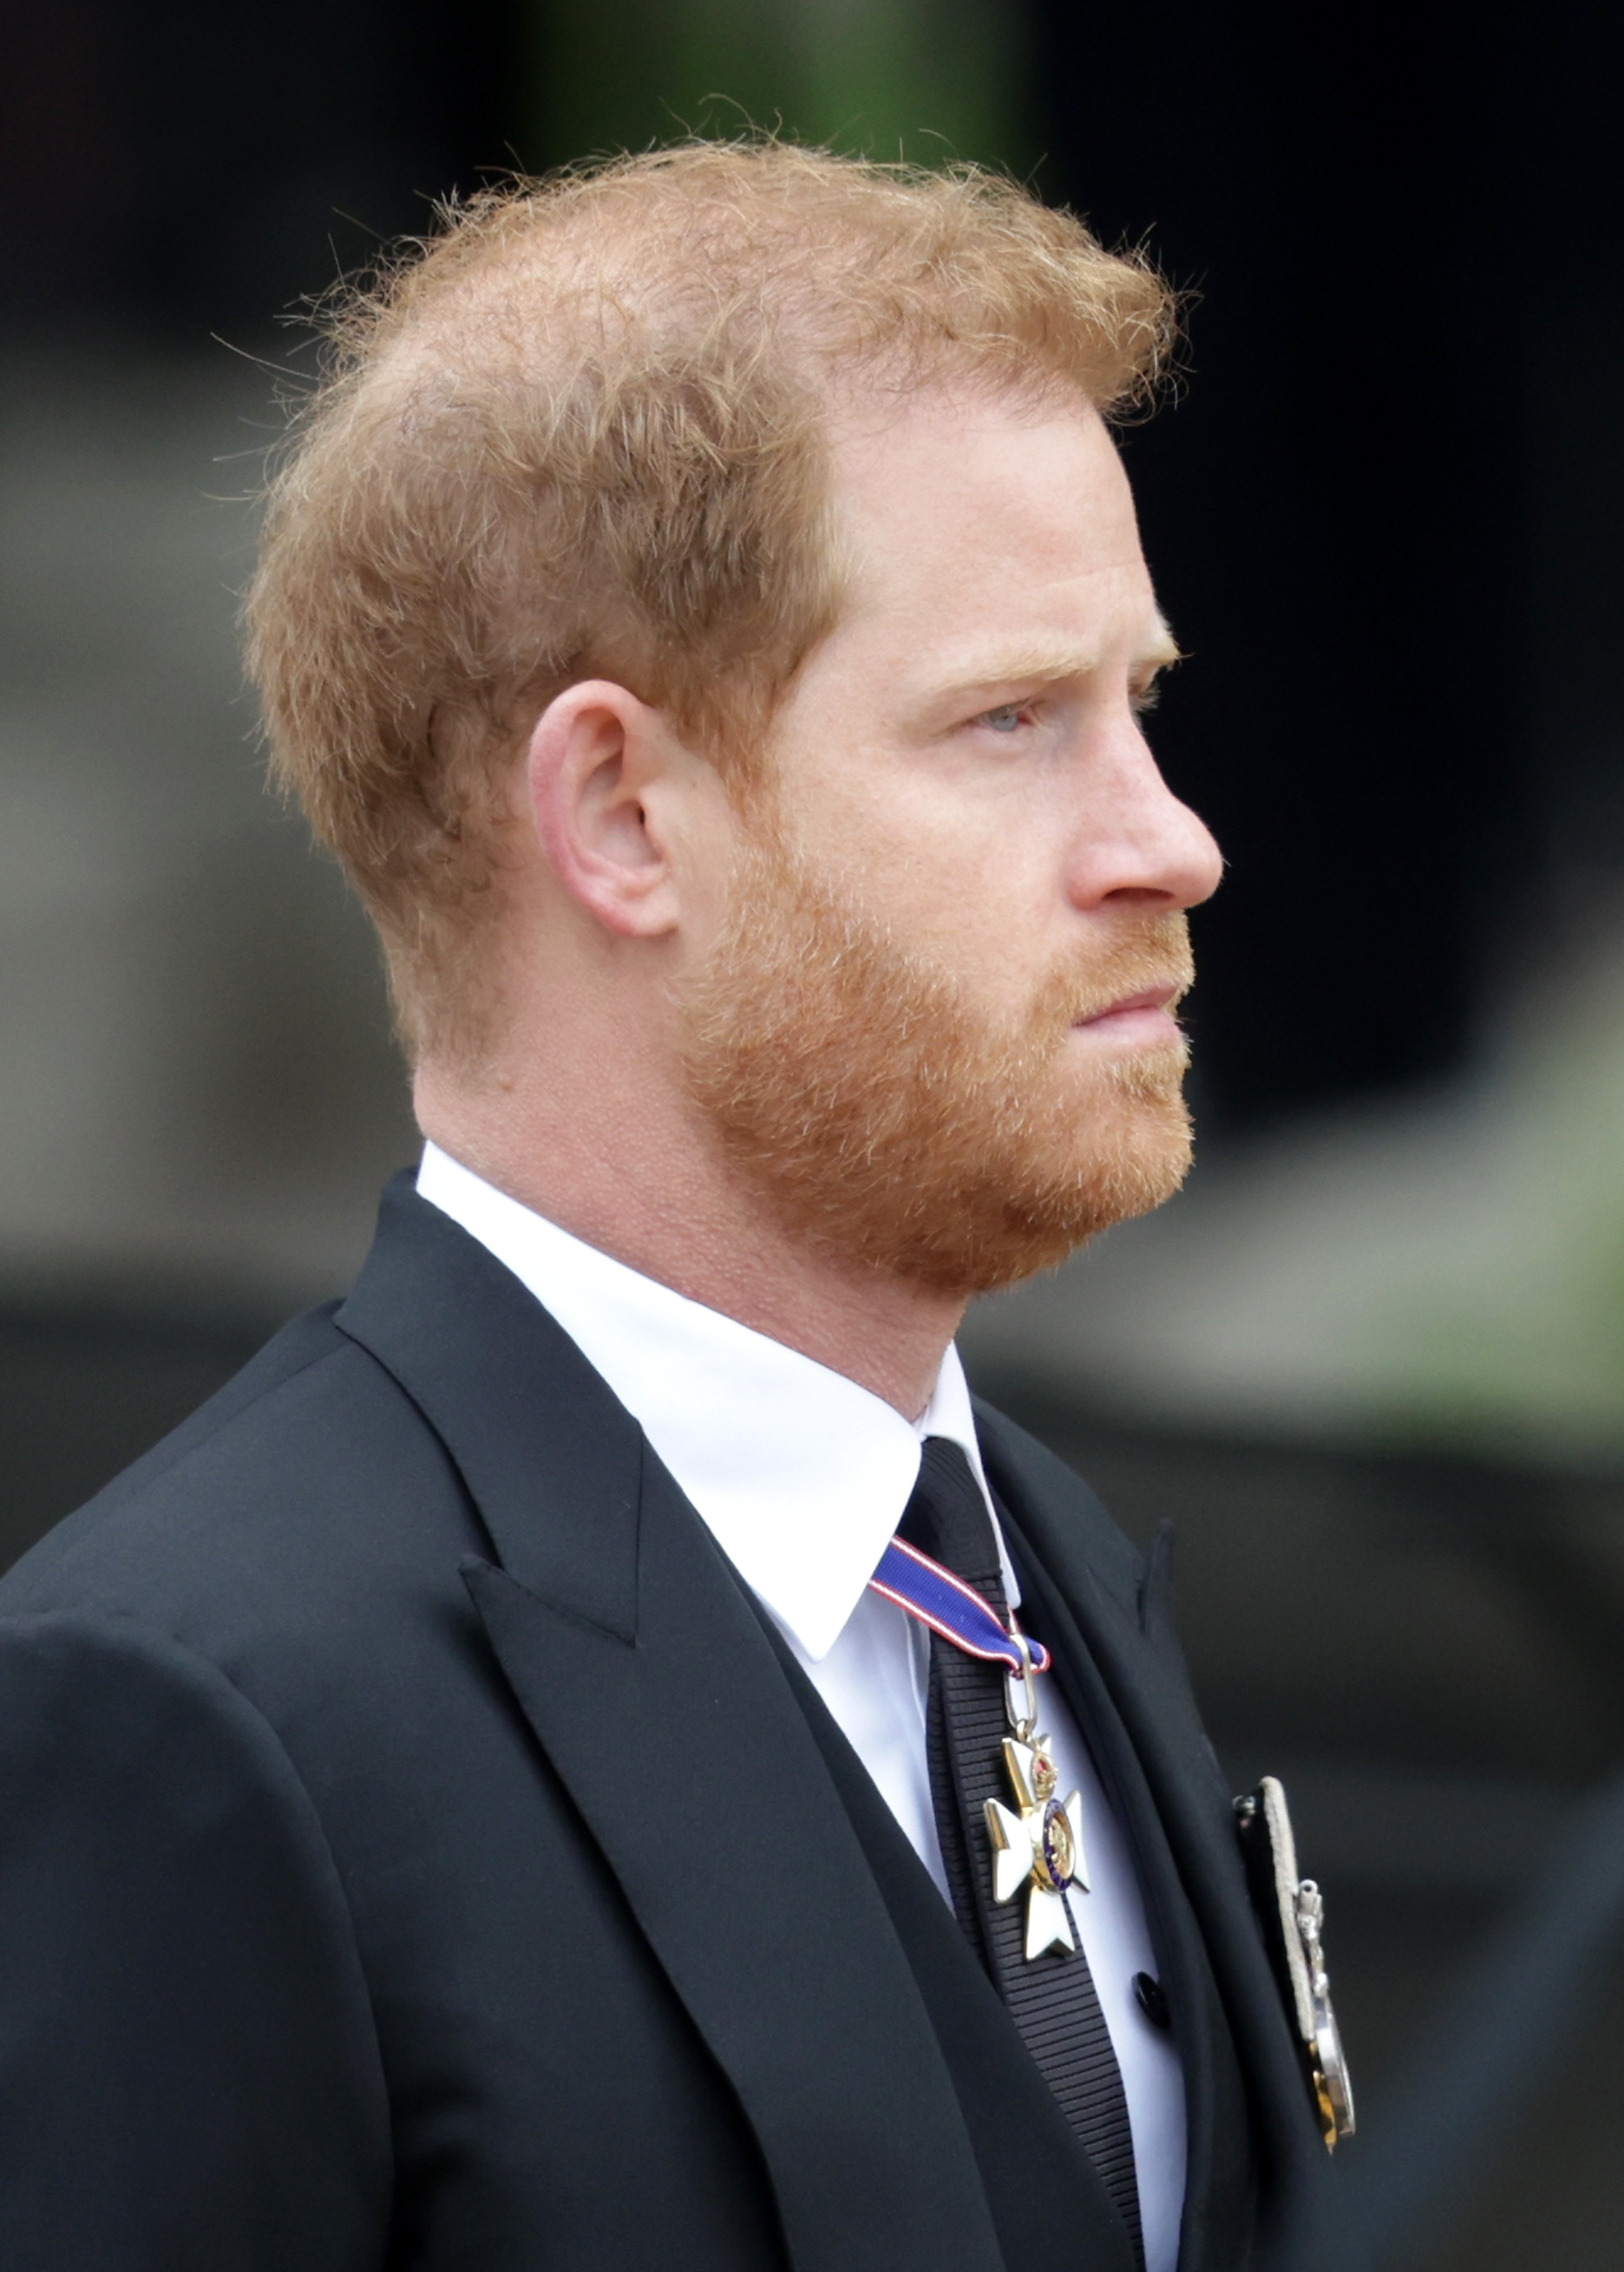 El príncipe Harry, duque de Sussex, en el funeral de estado de la reina Elizabeth II en la Abadía de Westminster, el 19 de septiembre de 2022 en Londres, Inglaterra. | Foto: Getty Images